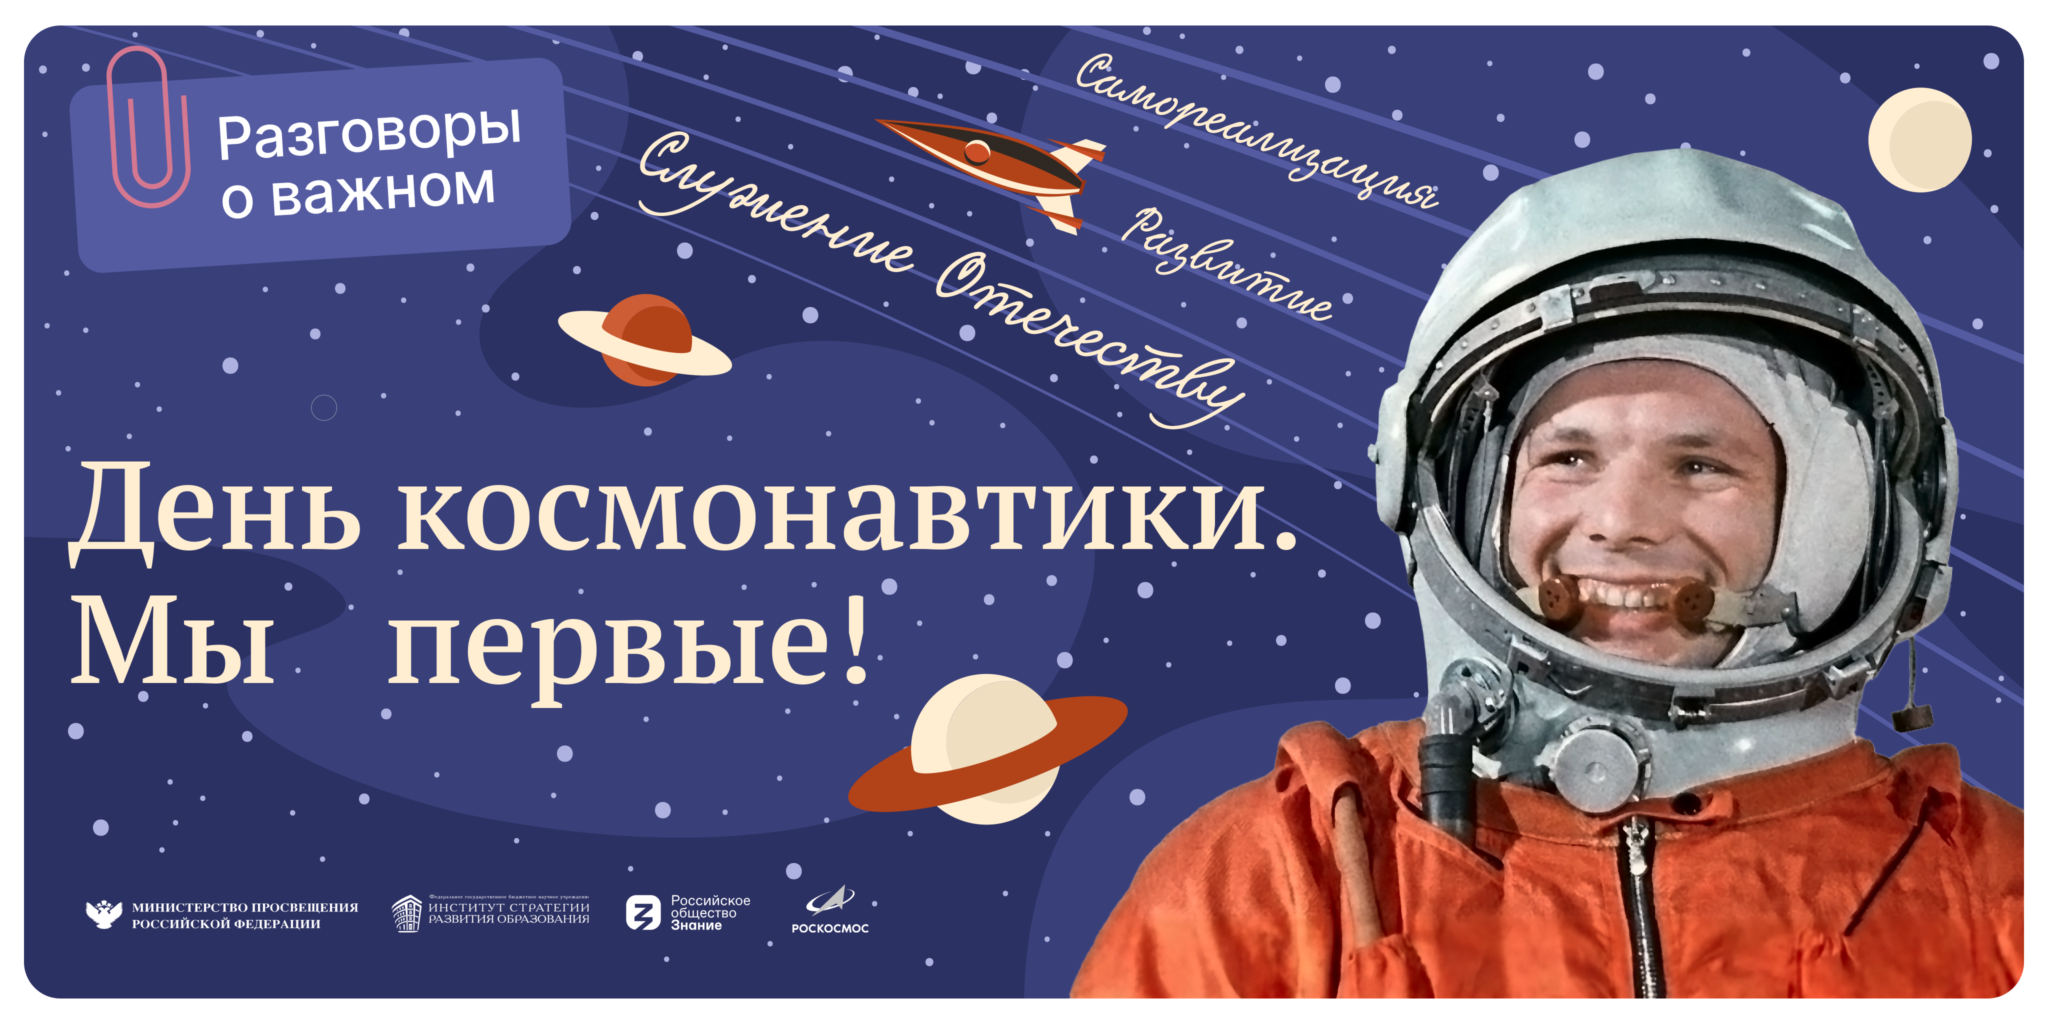 10 апреля 2021 г. День космонавтики. Праздник день космонавтики. Плакат "день космонавтики". День космонавтики Плакаи.